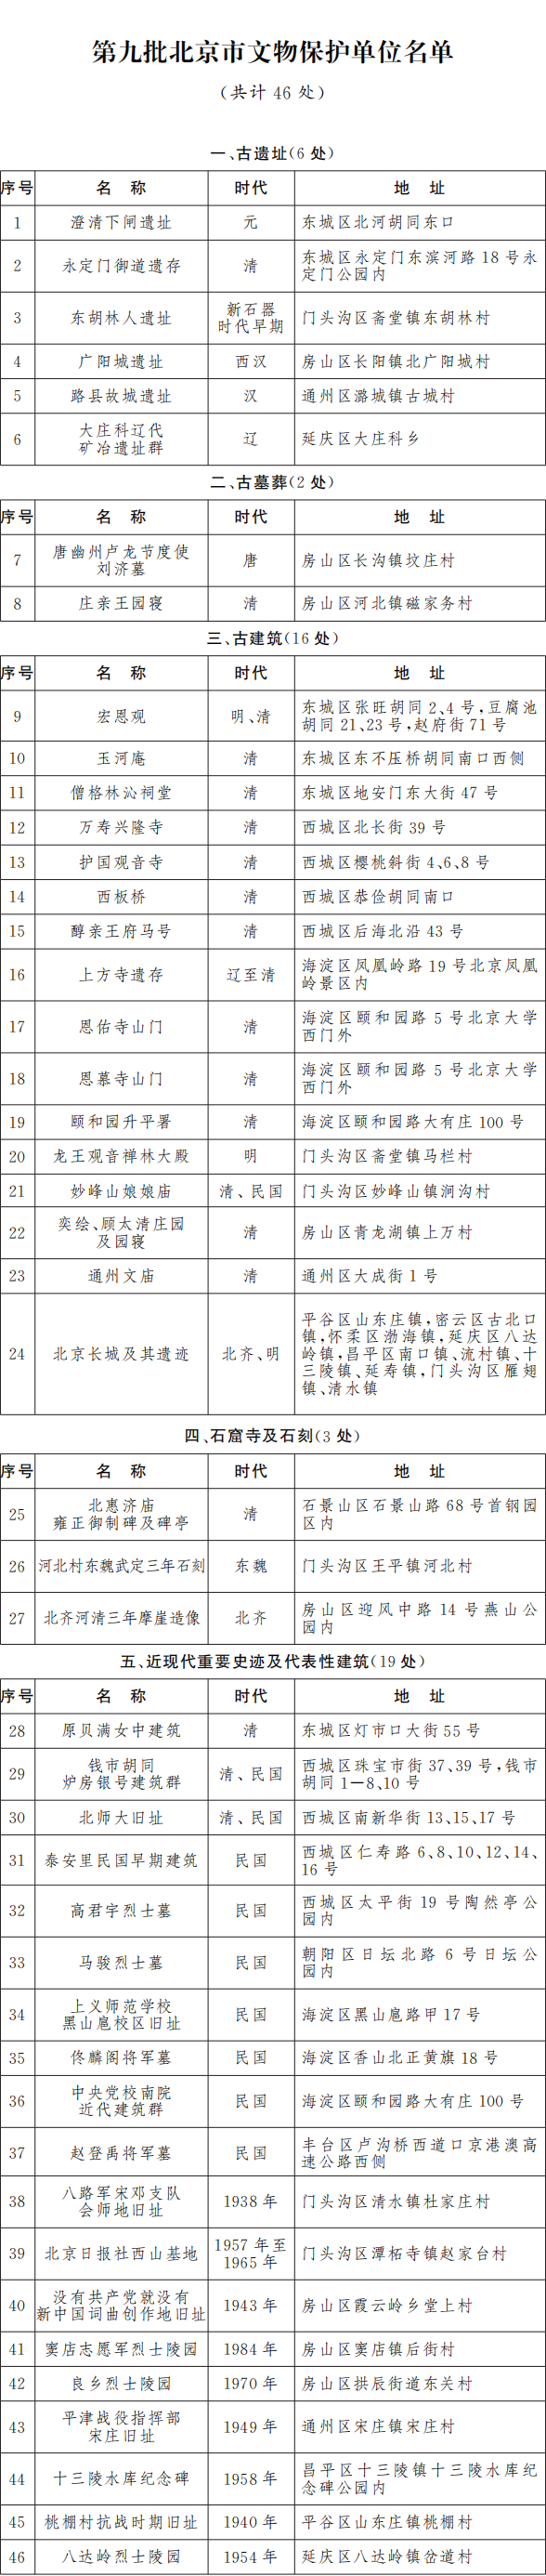 第九批北京市文物保护单位名单